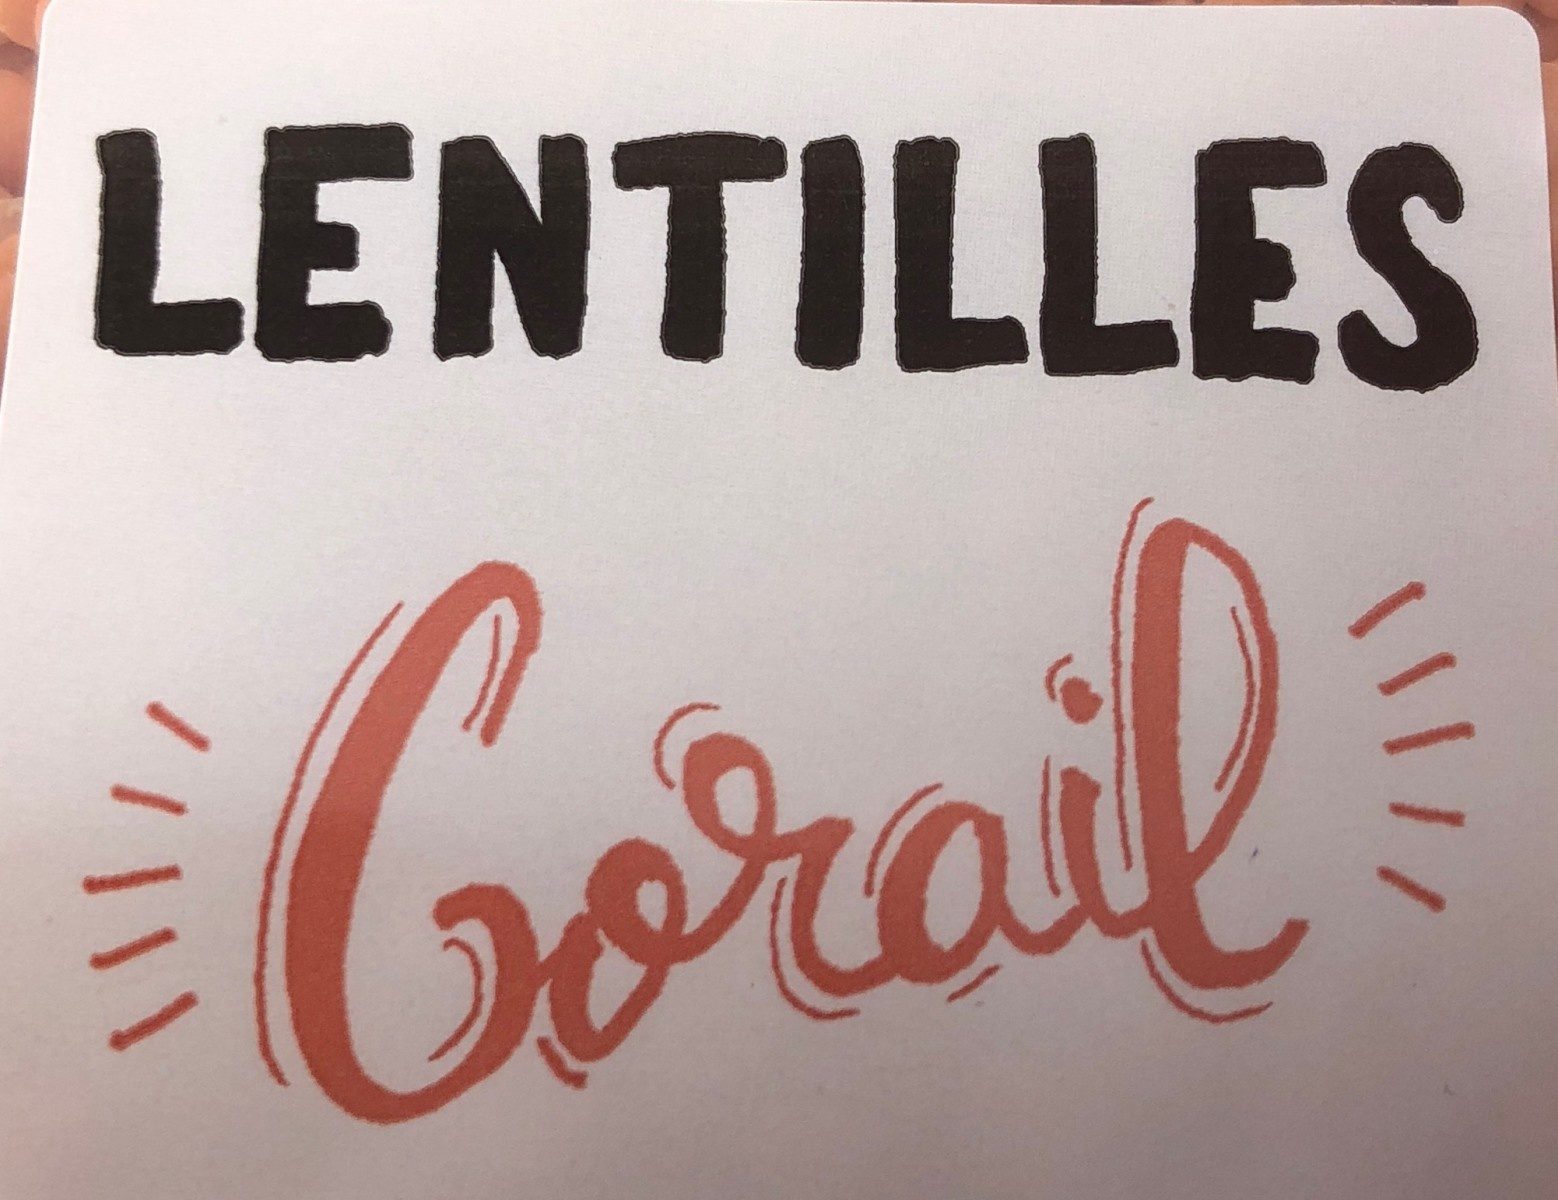 Lentilles corail - Ingrédients